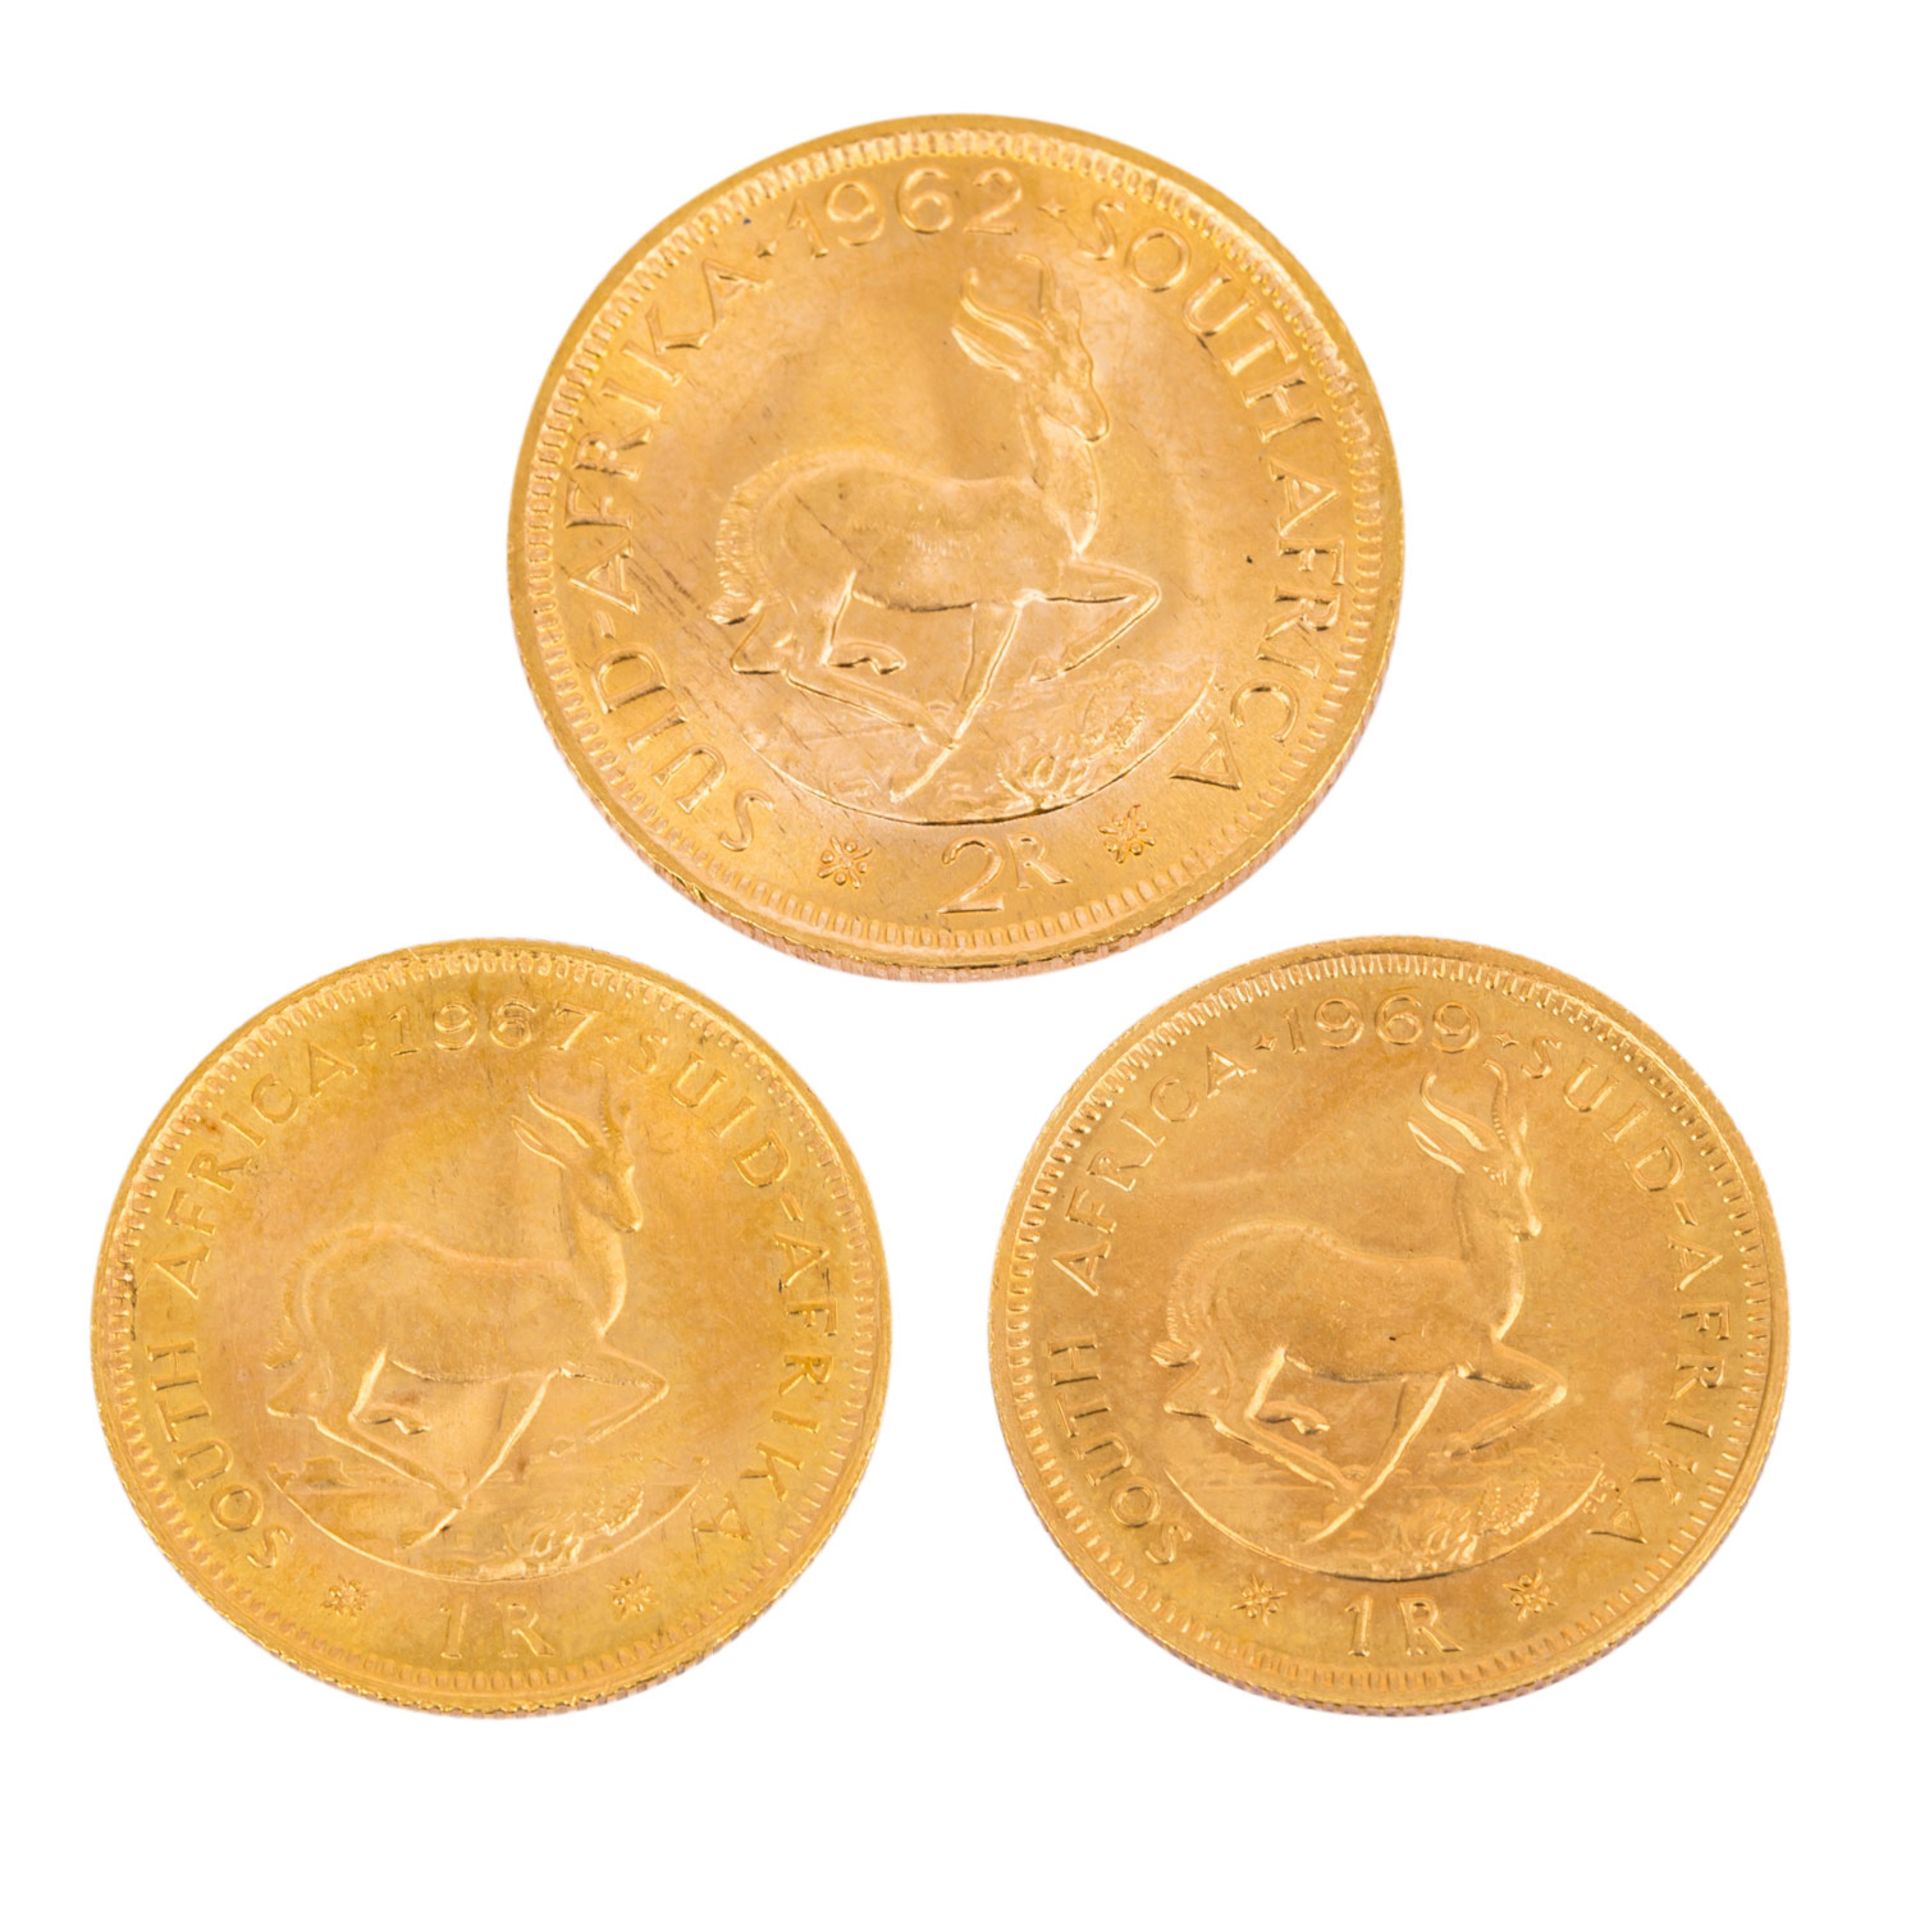 Kleines Goldlot Südafrikainsgesamt Feingewicht ca. 16g, besteht aus 2x 1 Rand 1967 un - Bild 2 aus 2